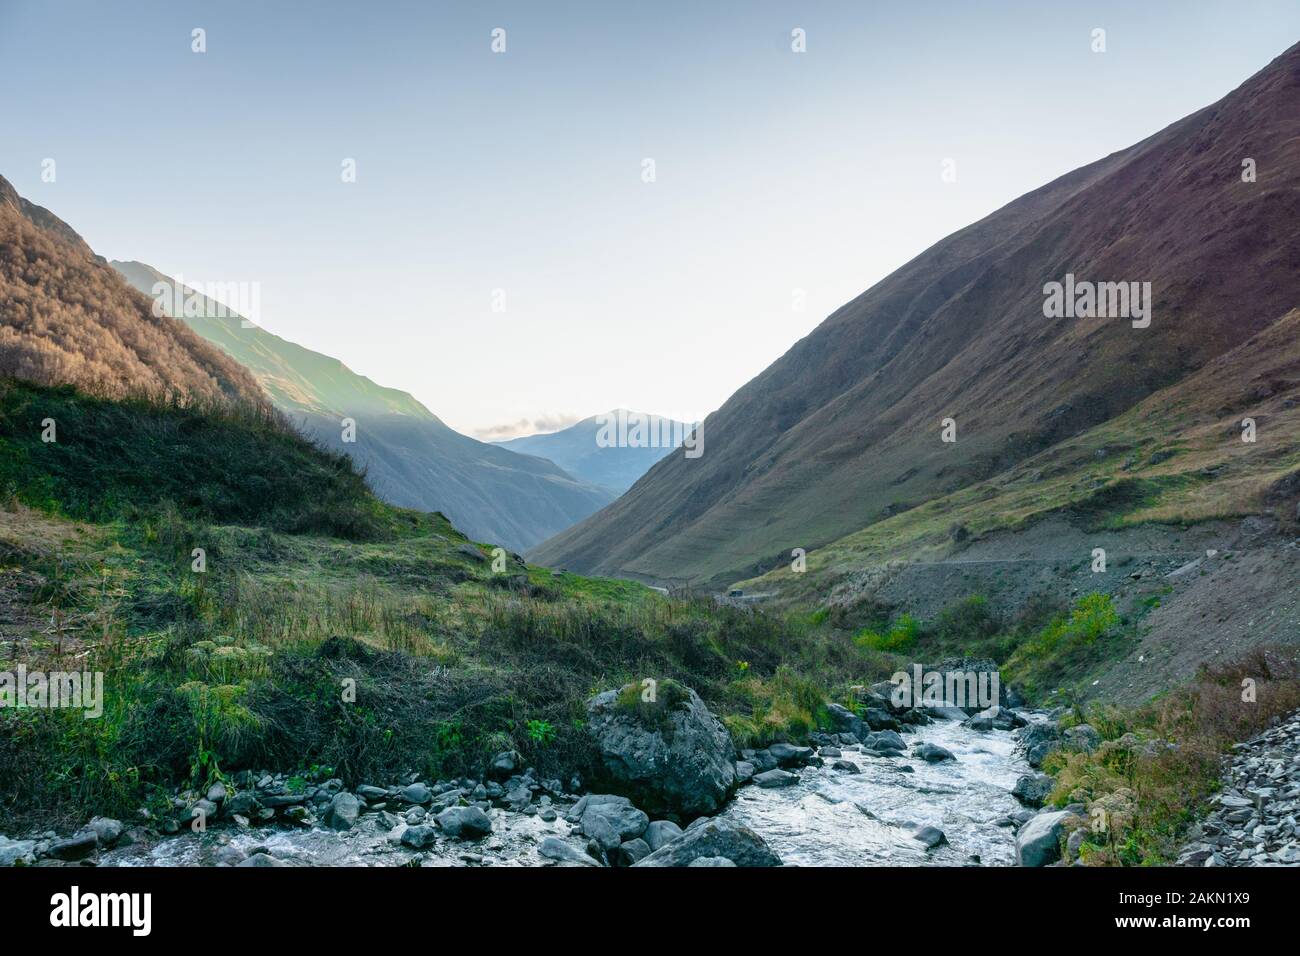 Village de Juta paysage avec rivière et montagnes au coucher du soleil - un site de trekking populaire dans les montagnes du Caucase, région de Kazbegi, Géorgie. Banque D'Images